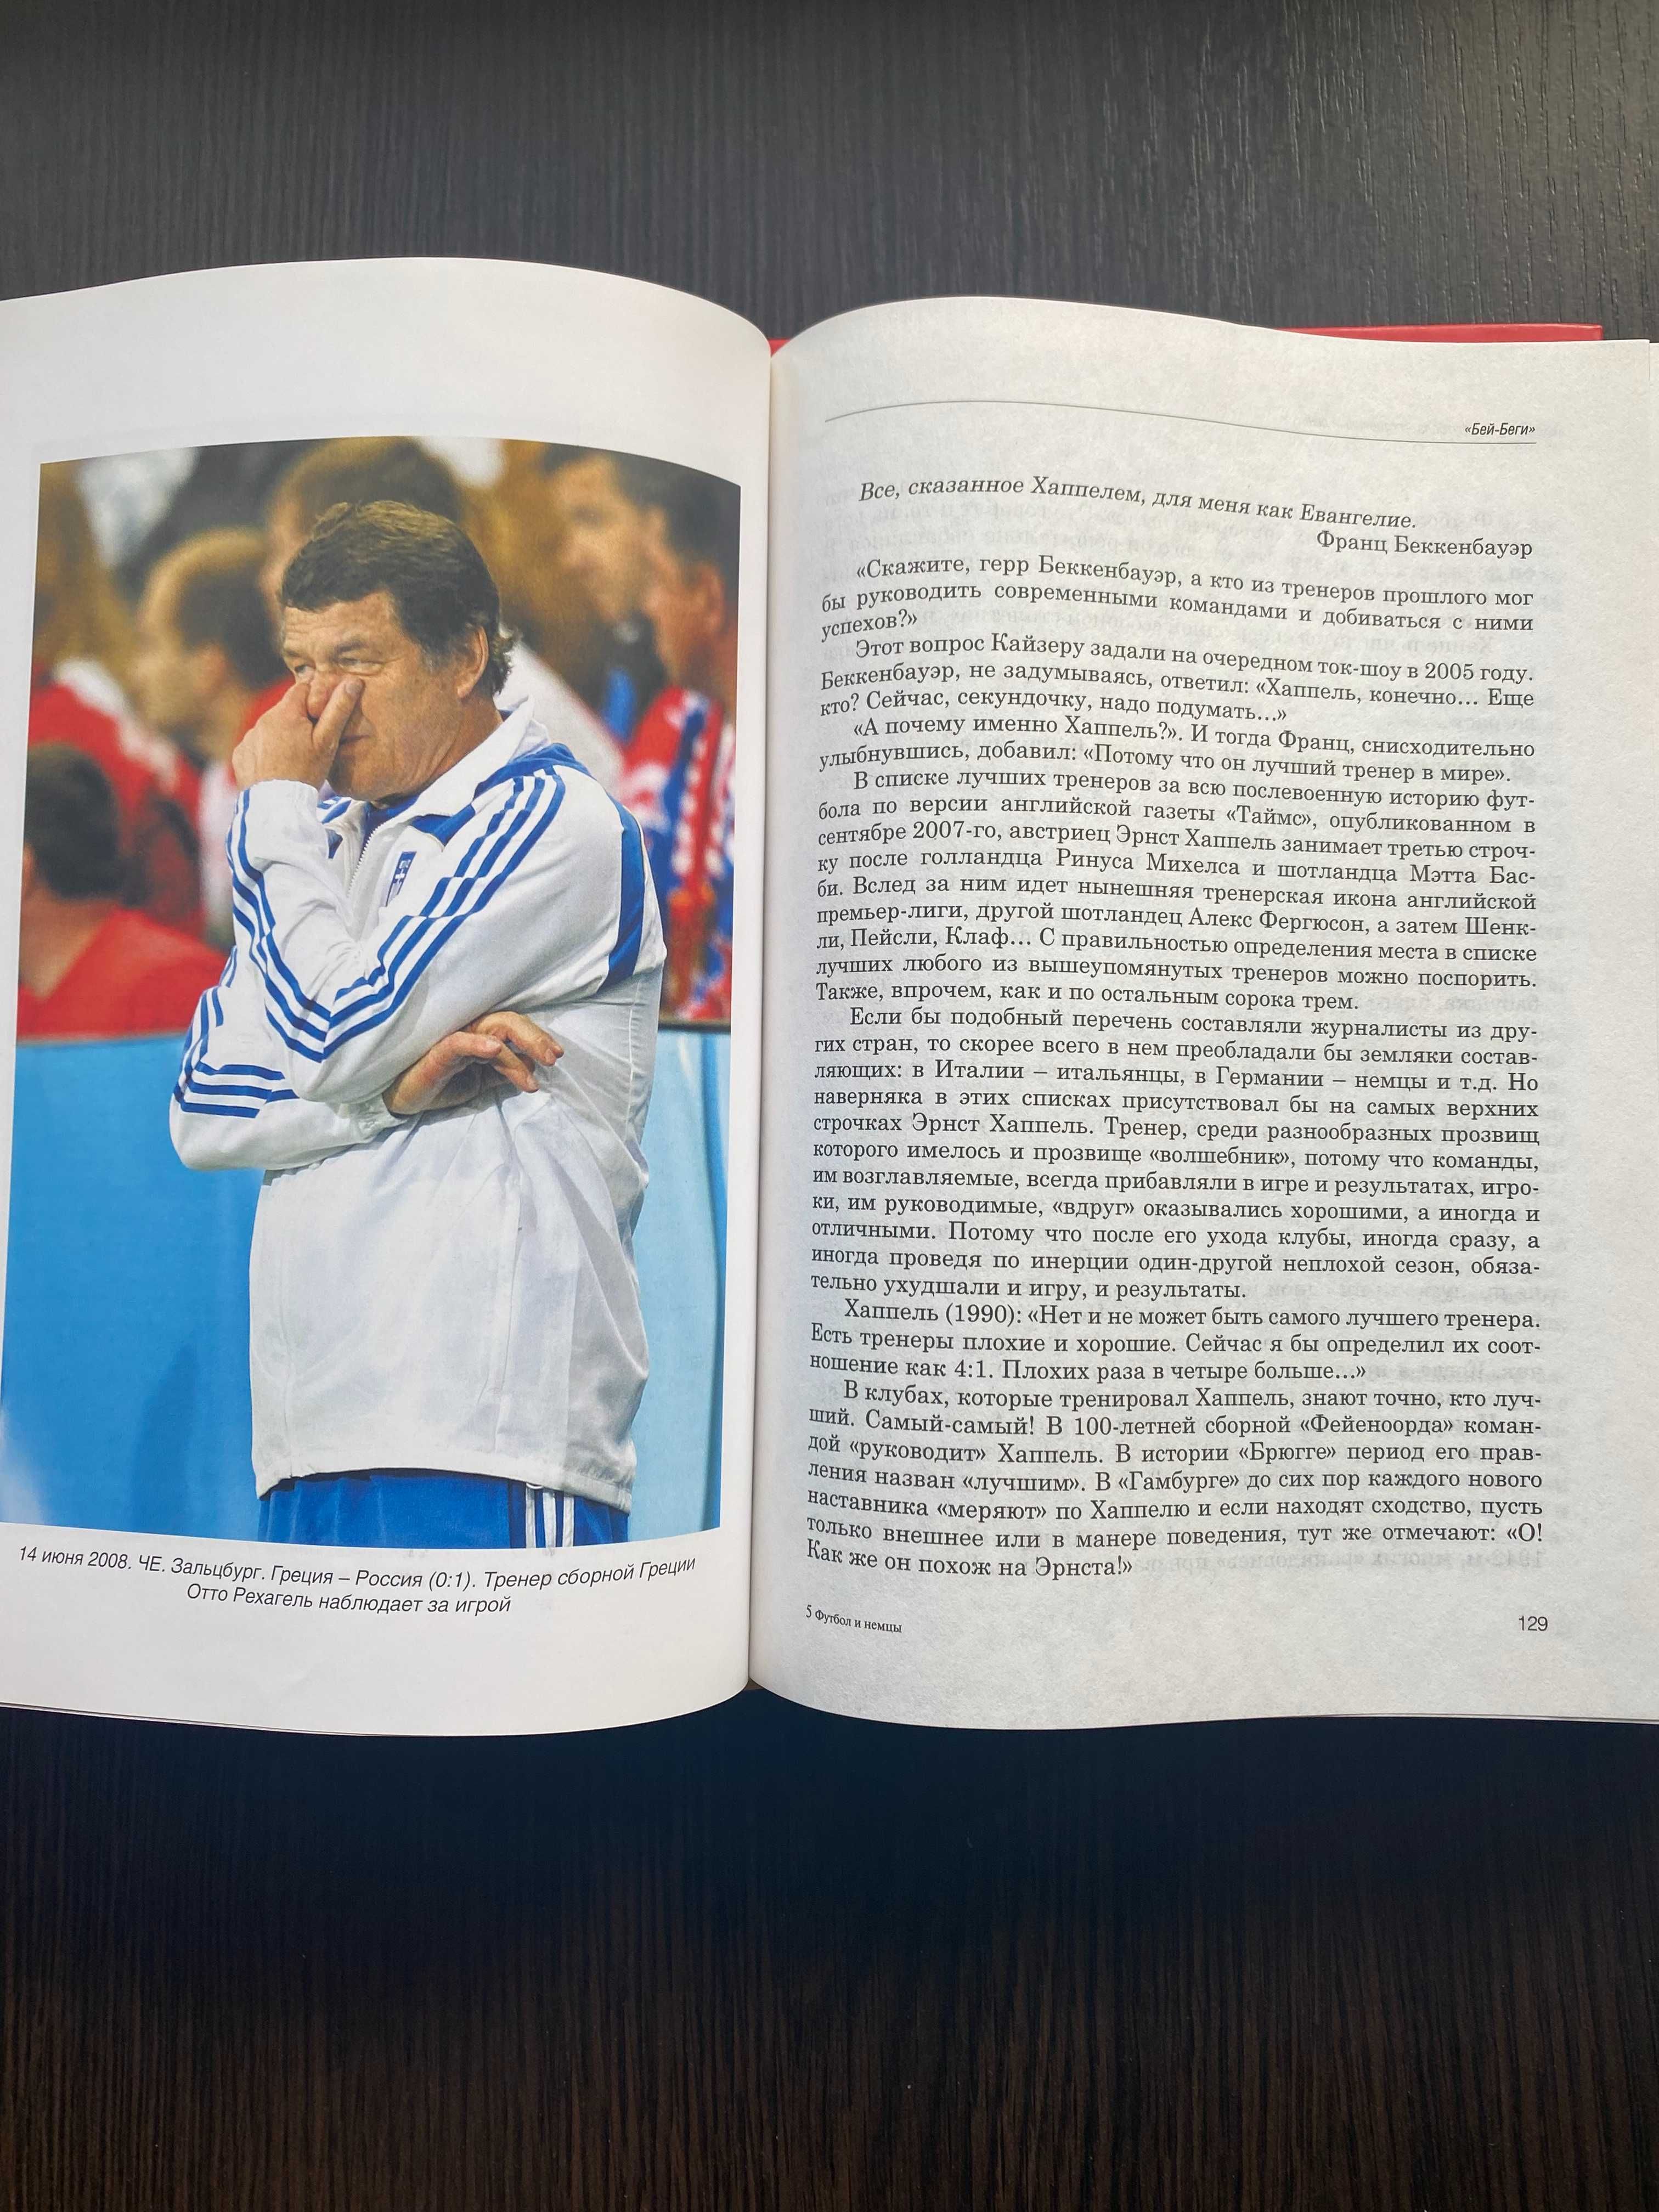 Книги "Футбол и немцы", "Испанская параллель" (Реал - Барселона)